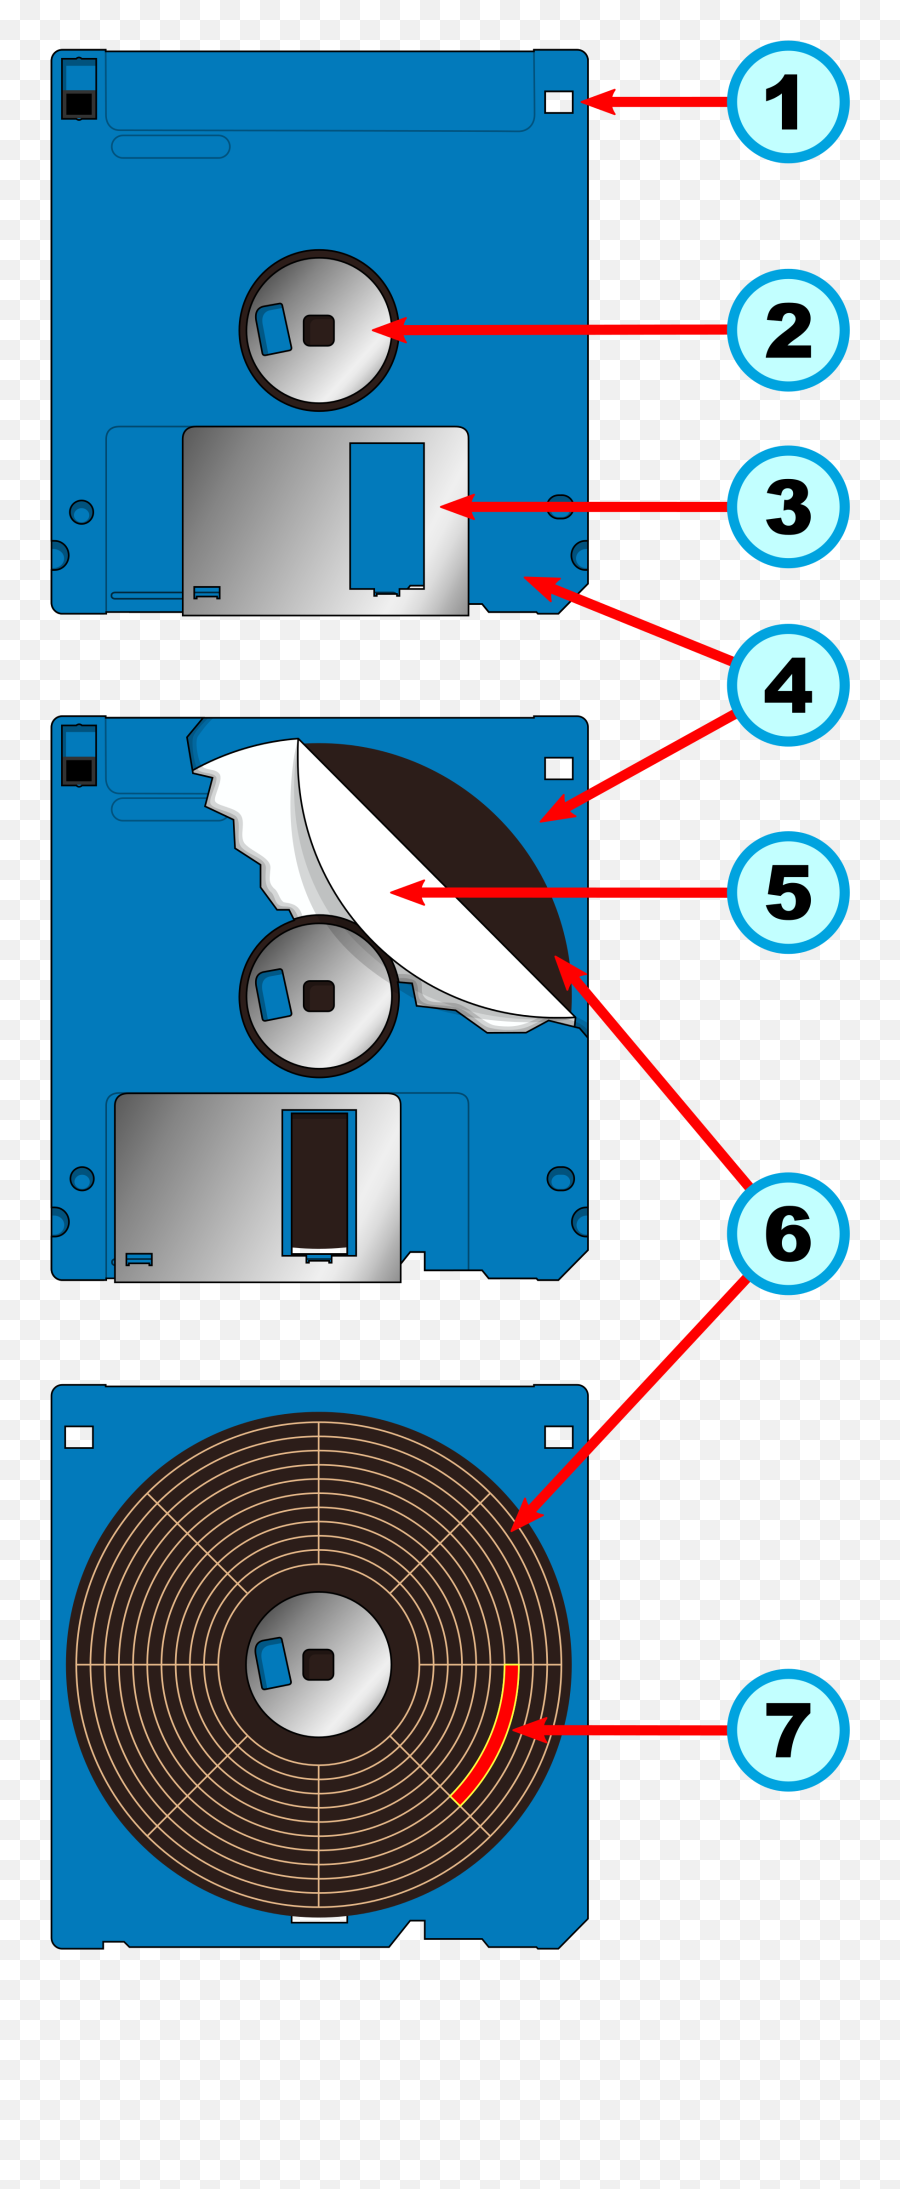 Floppy Disk Internal Diagram - Floppy Disk Png,Floppy Disk Png